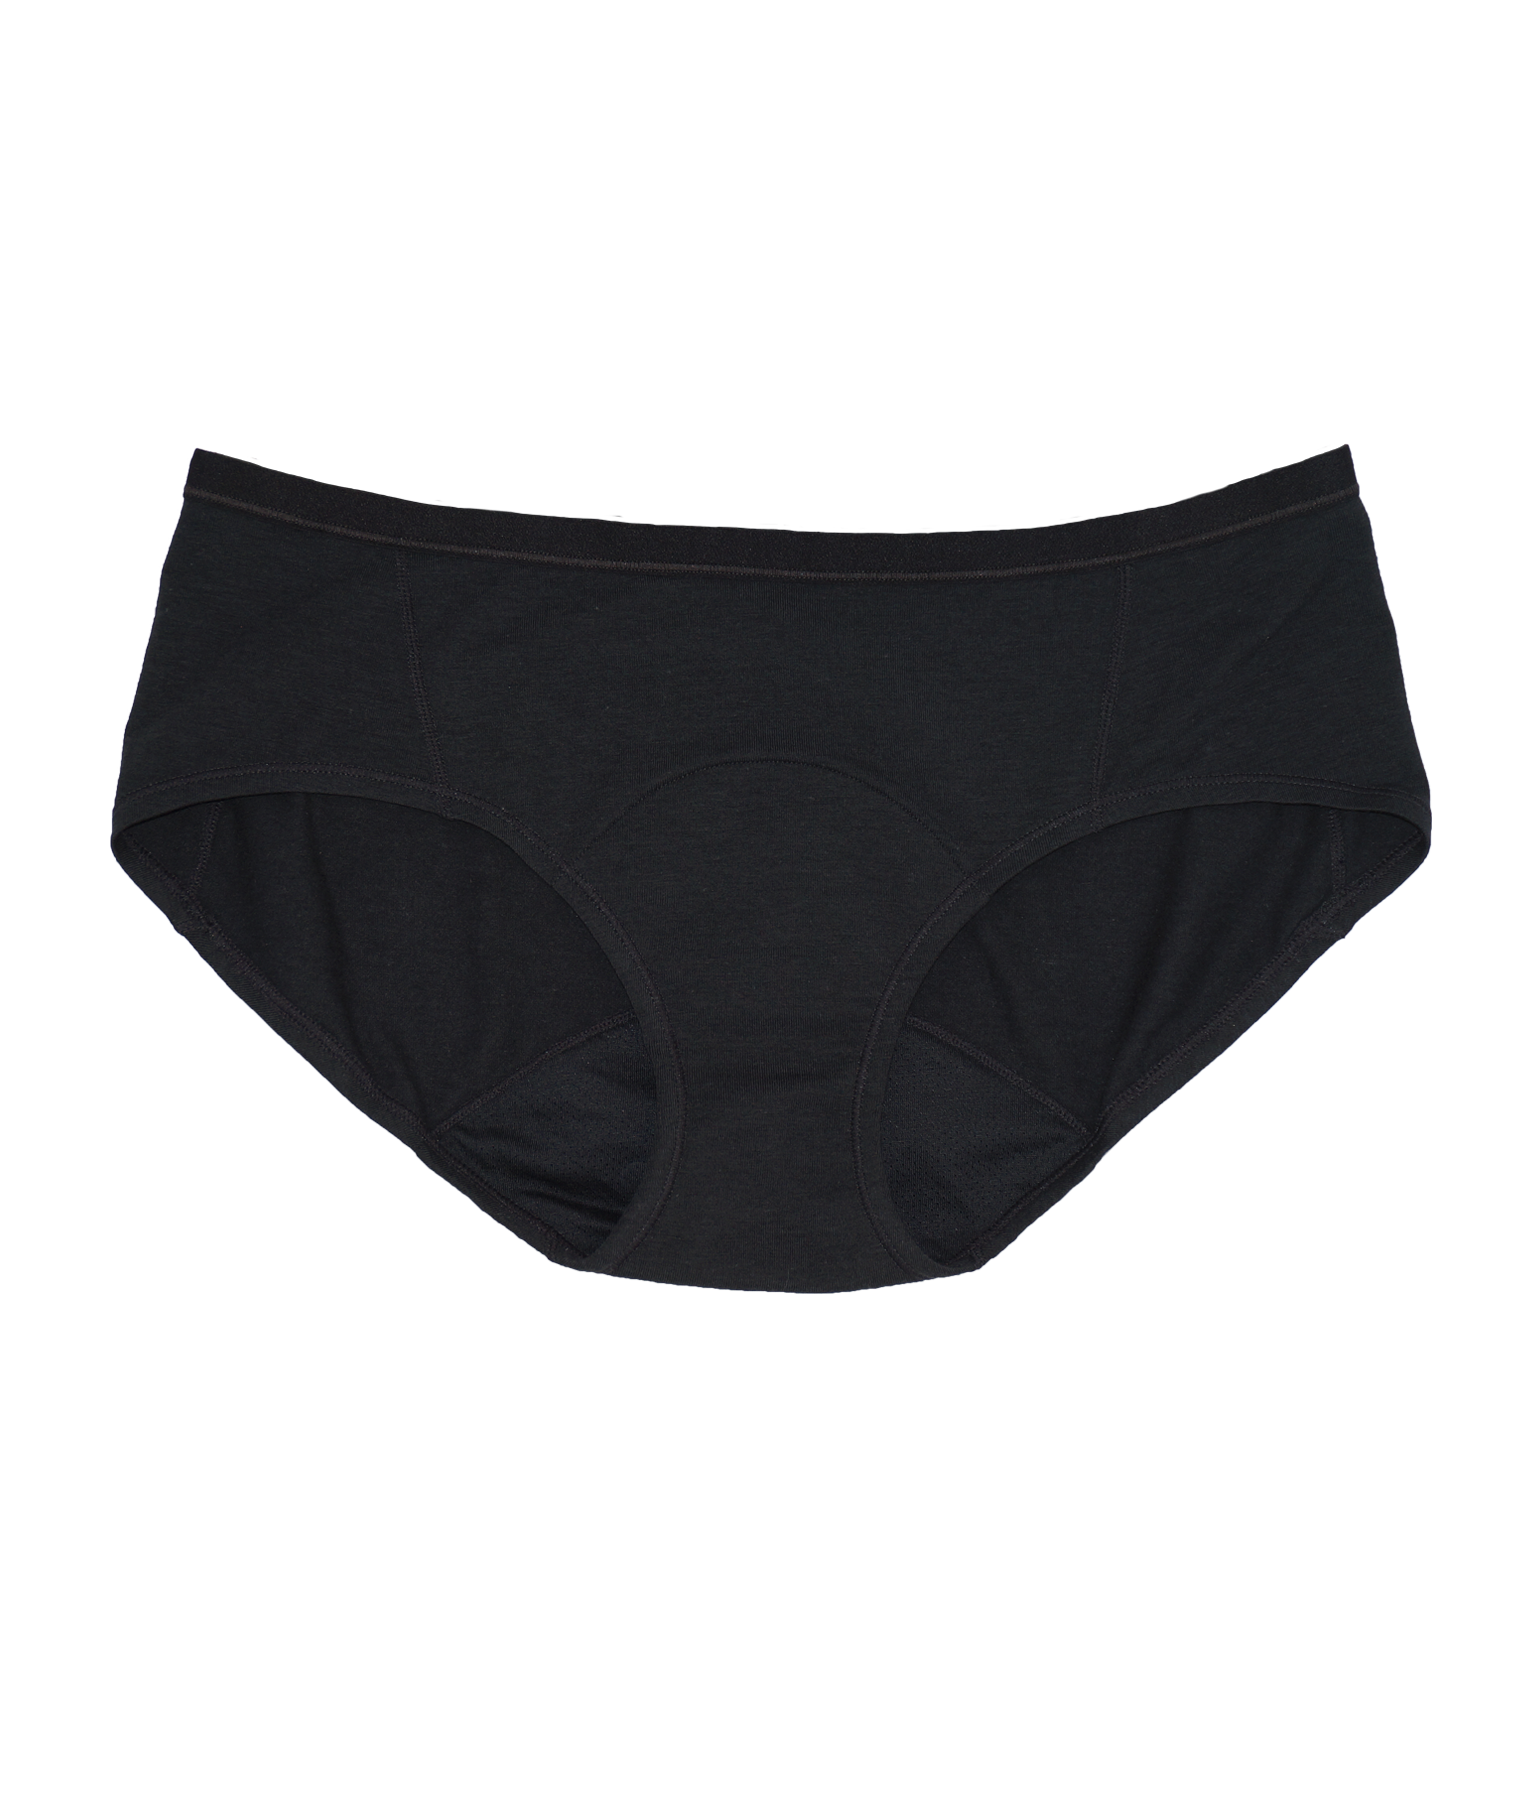 Aisle Period Underwear - Hipster – bare market